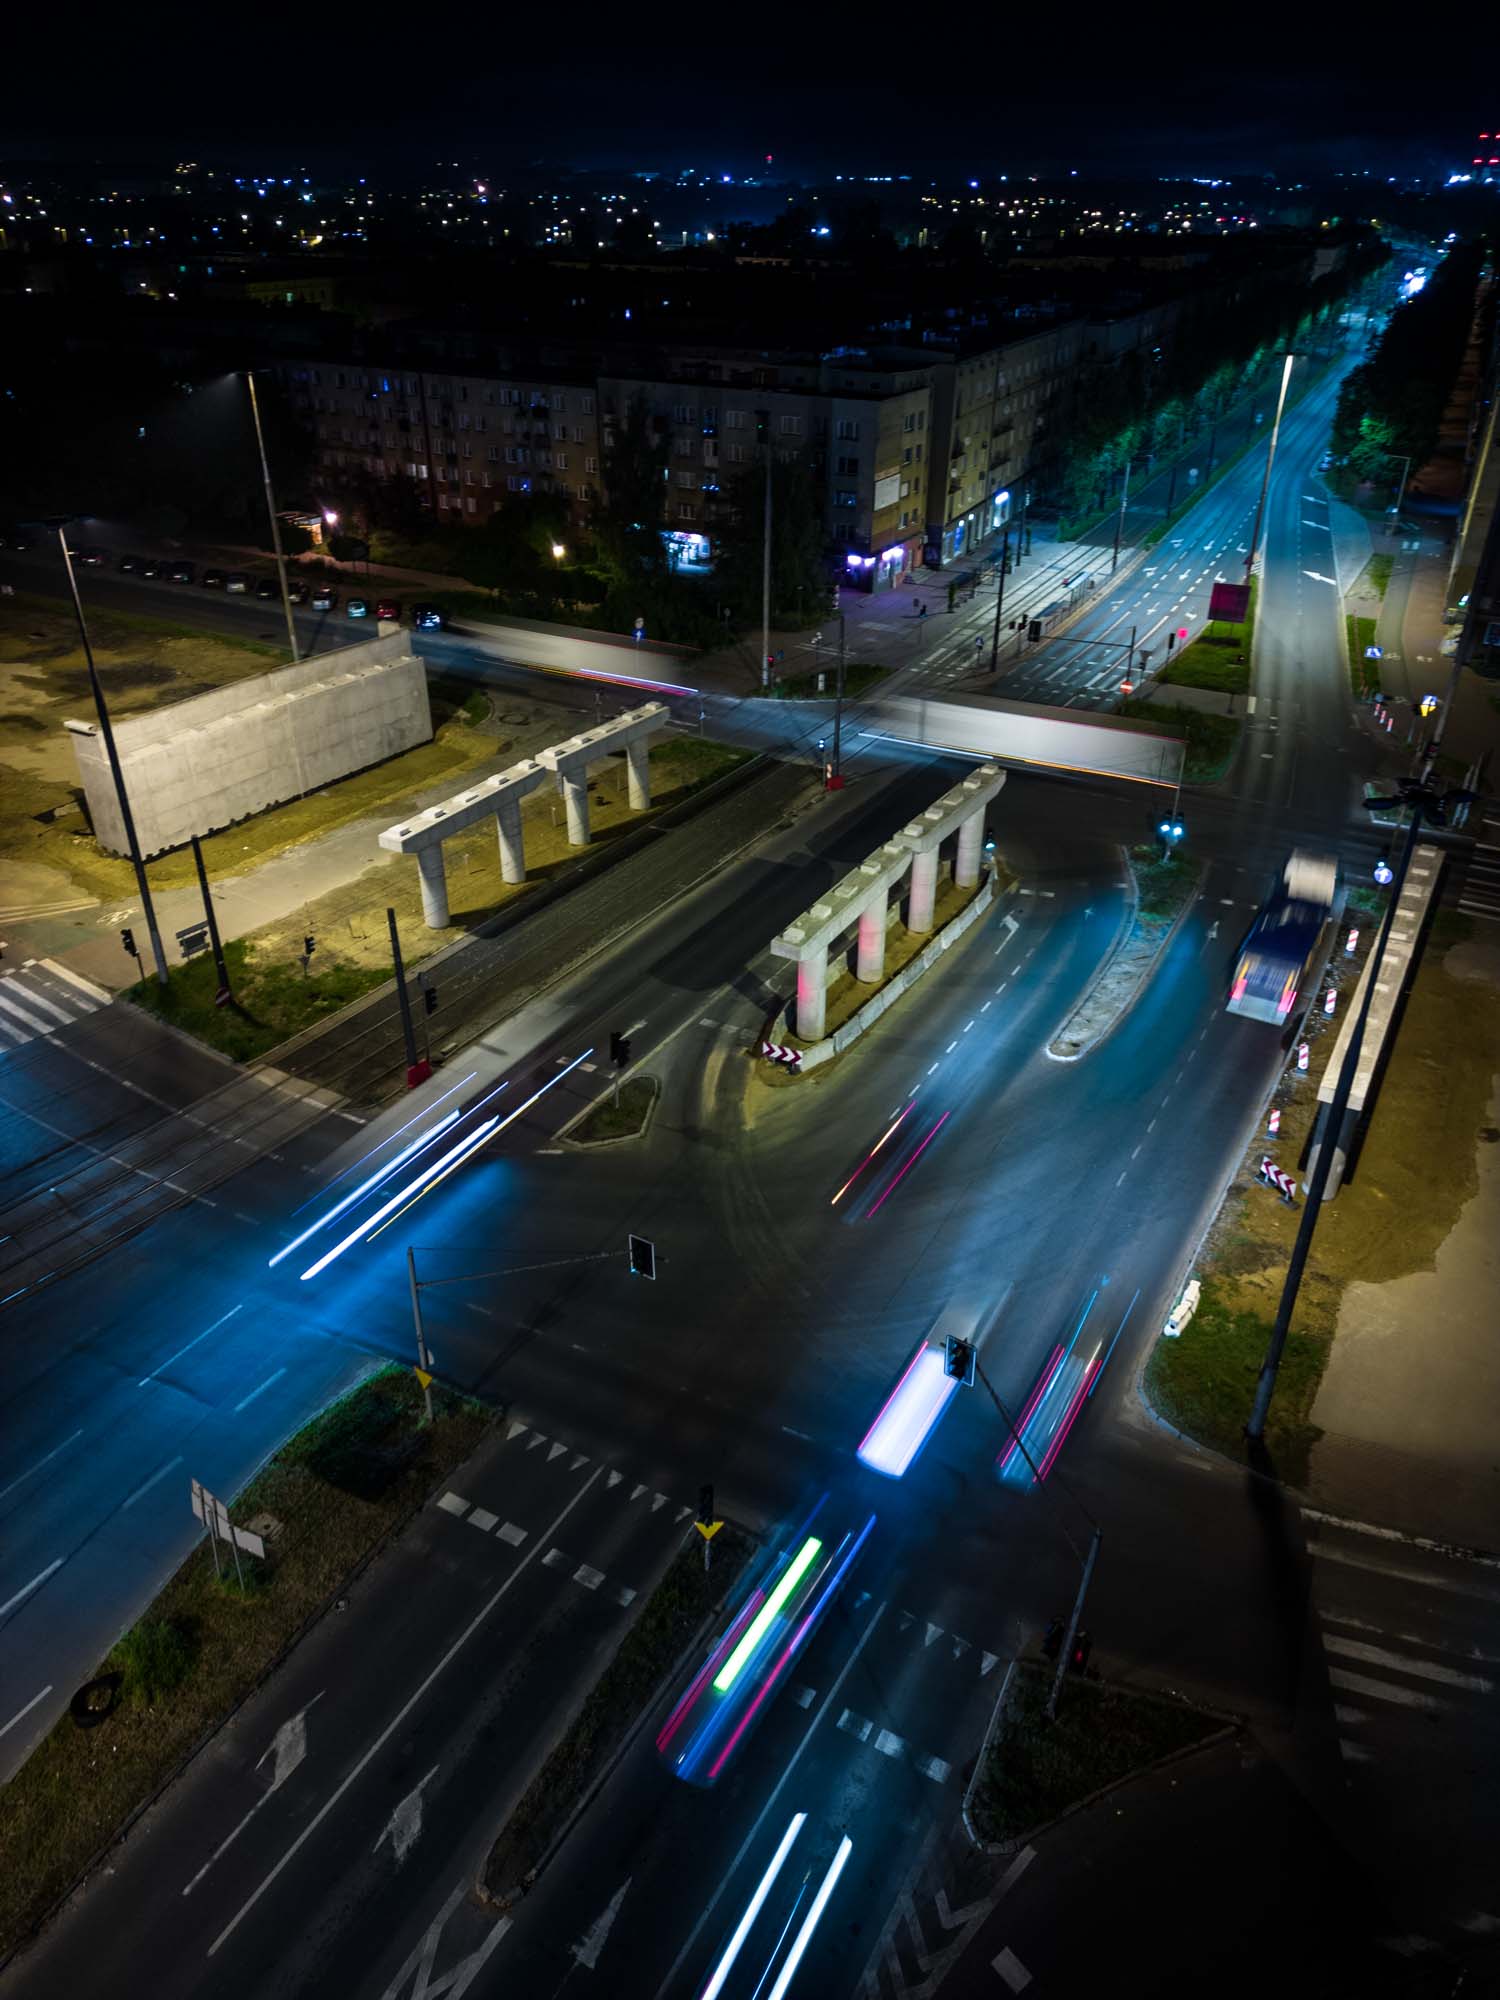 Poprawione zdjęcie ulicy nocą DJI Mini 3 Pro